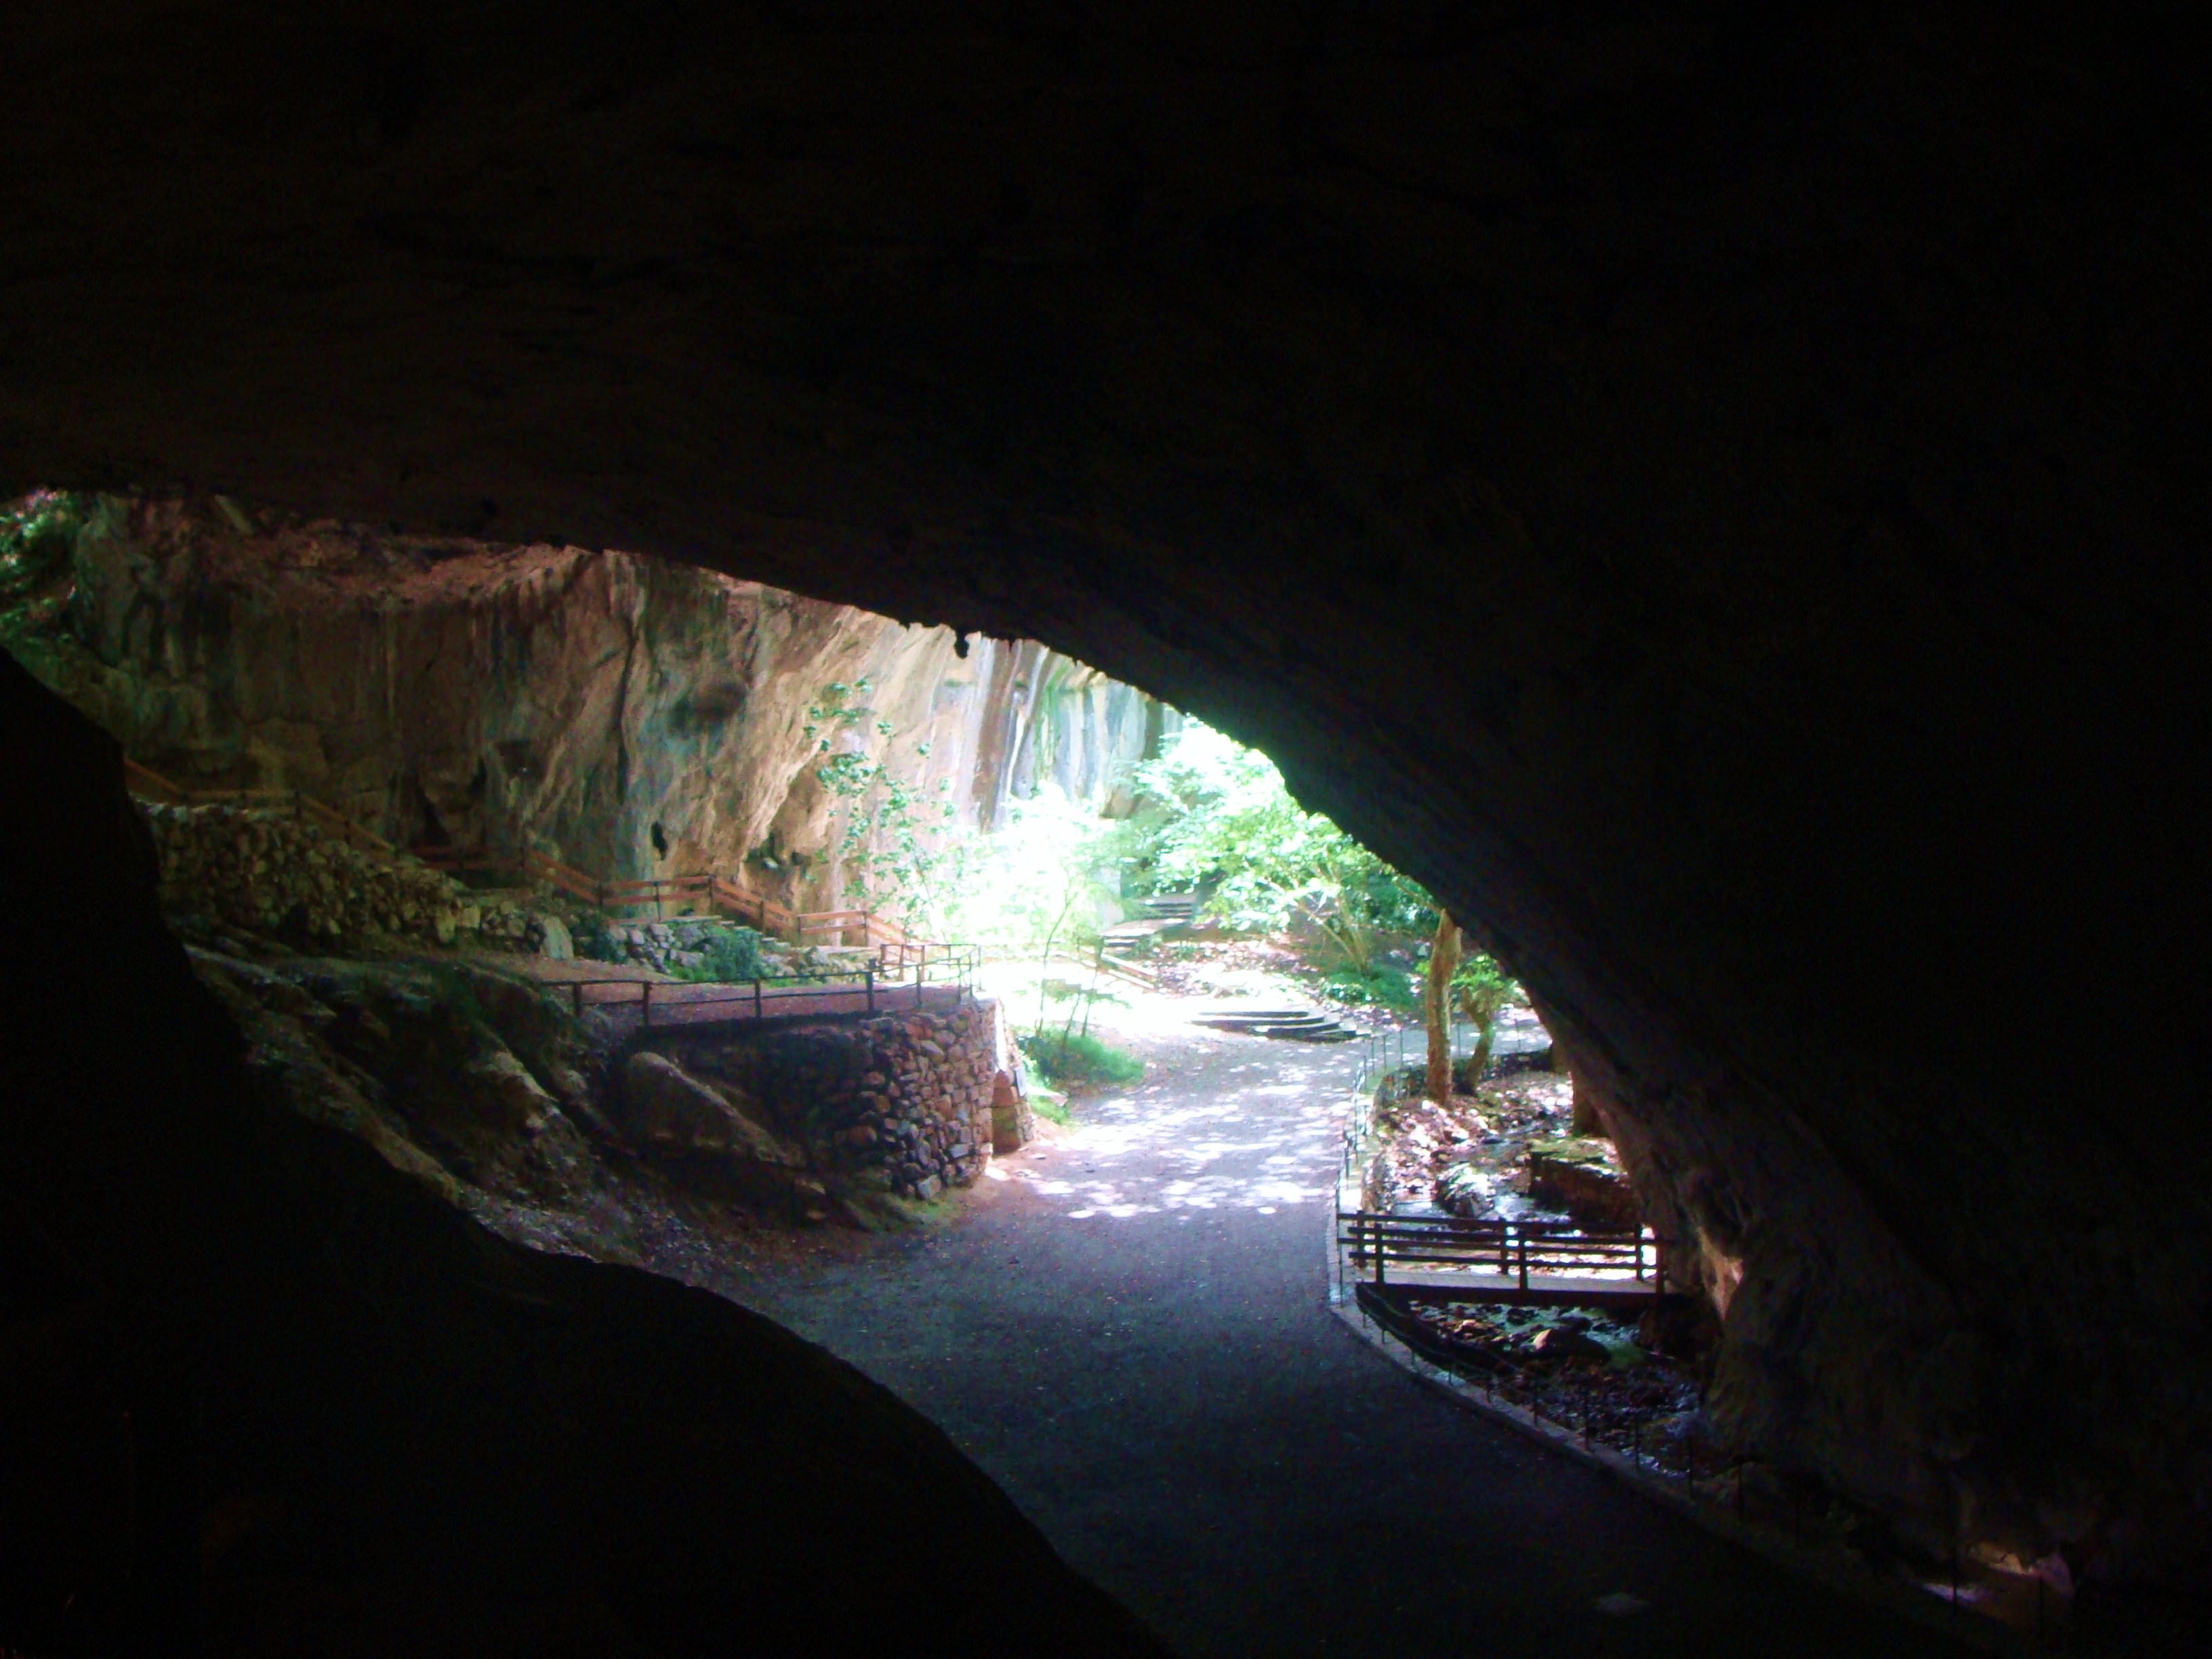 Interior-cueva-pueblo de navarra-zugarramurdi